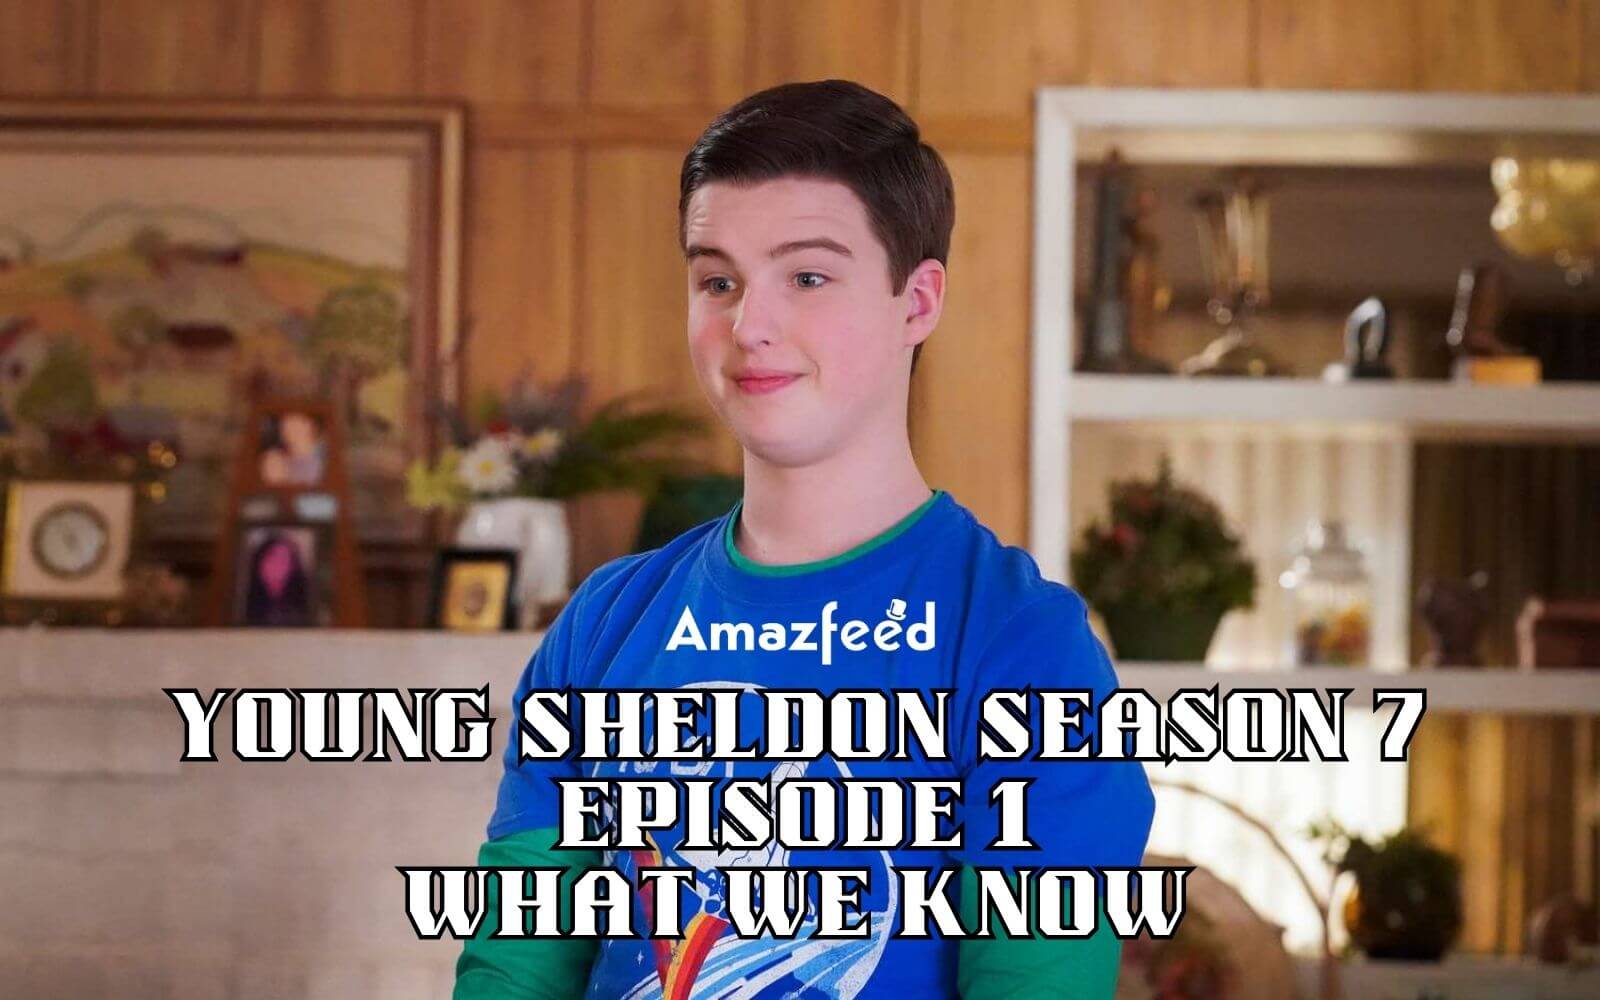 Young Sheldon Season 7 Episode 1 release